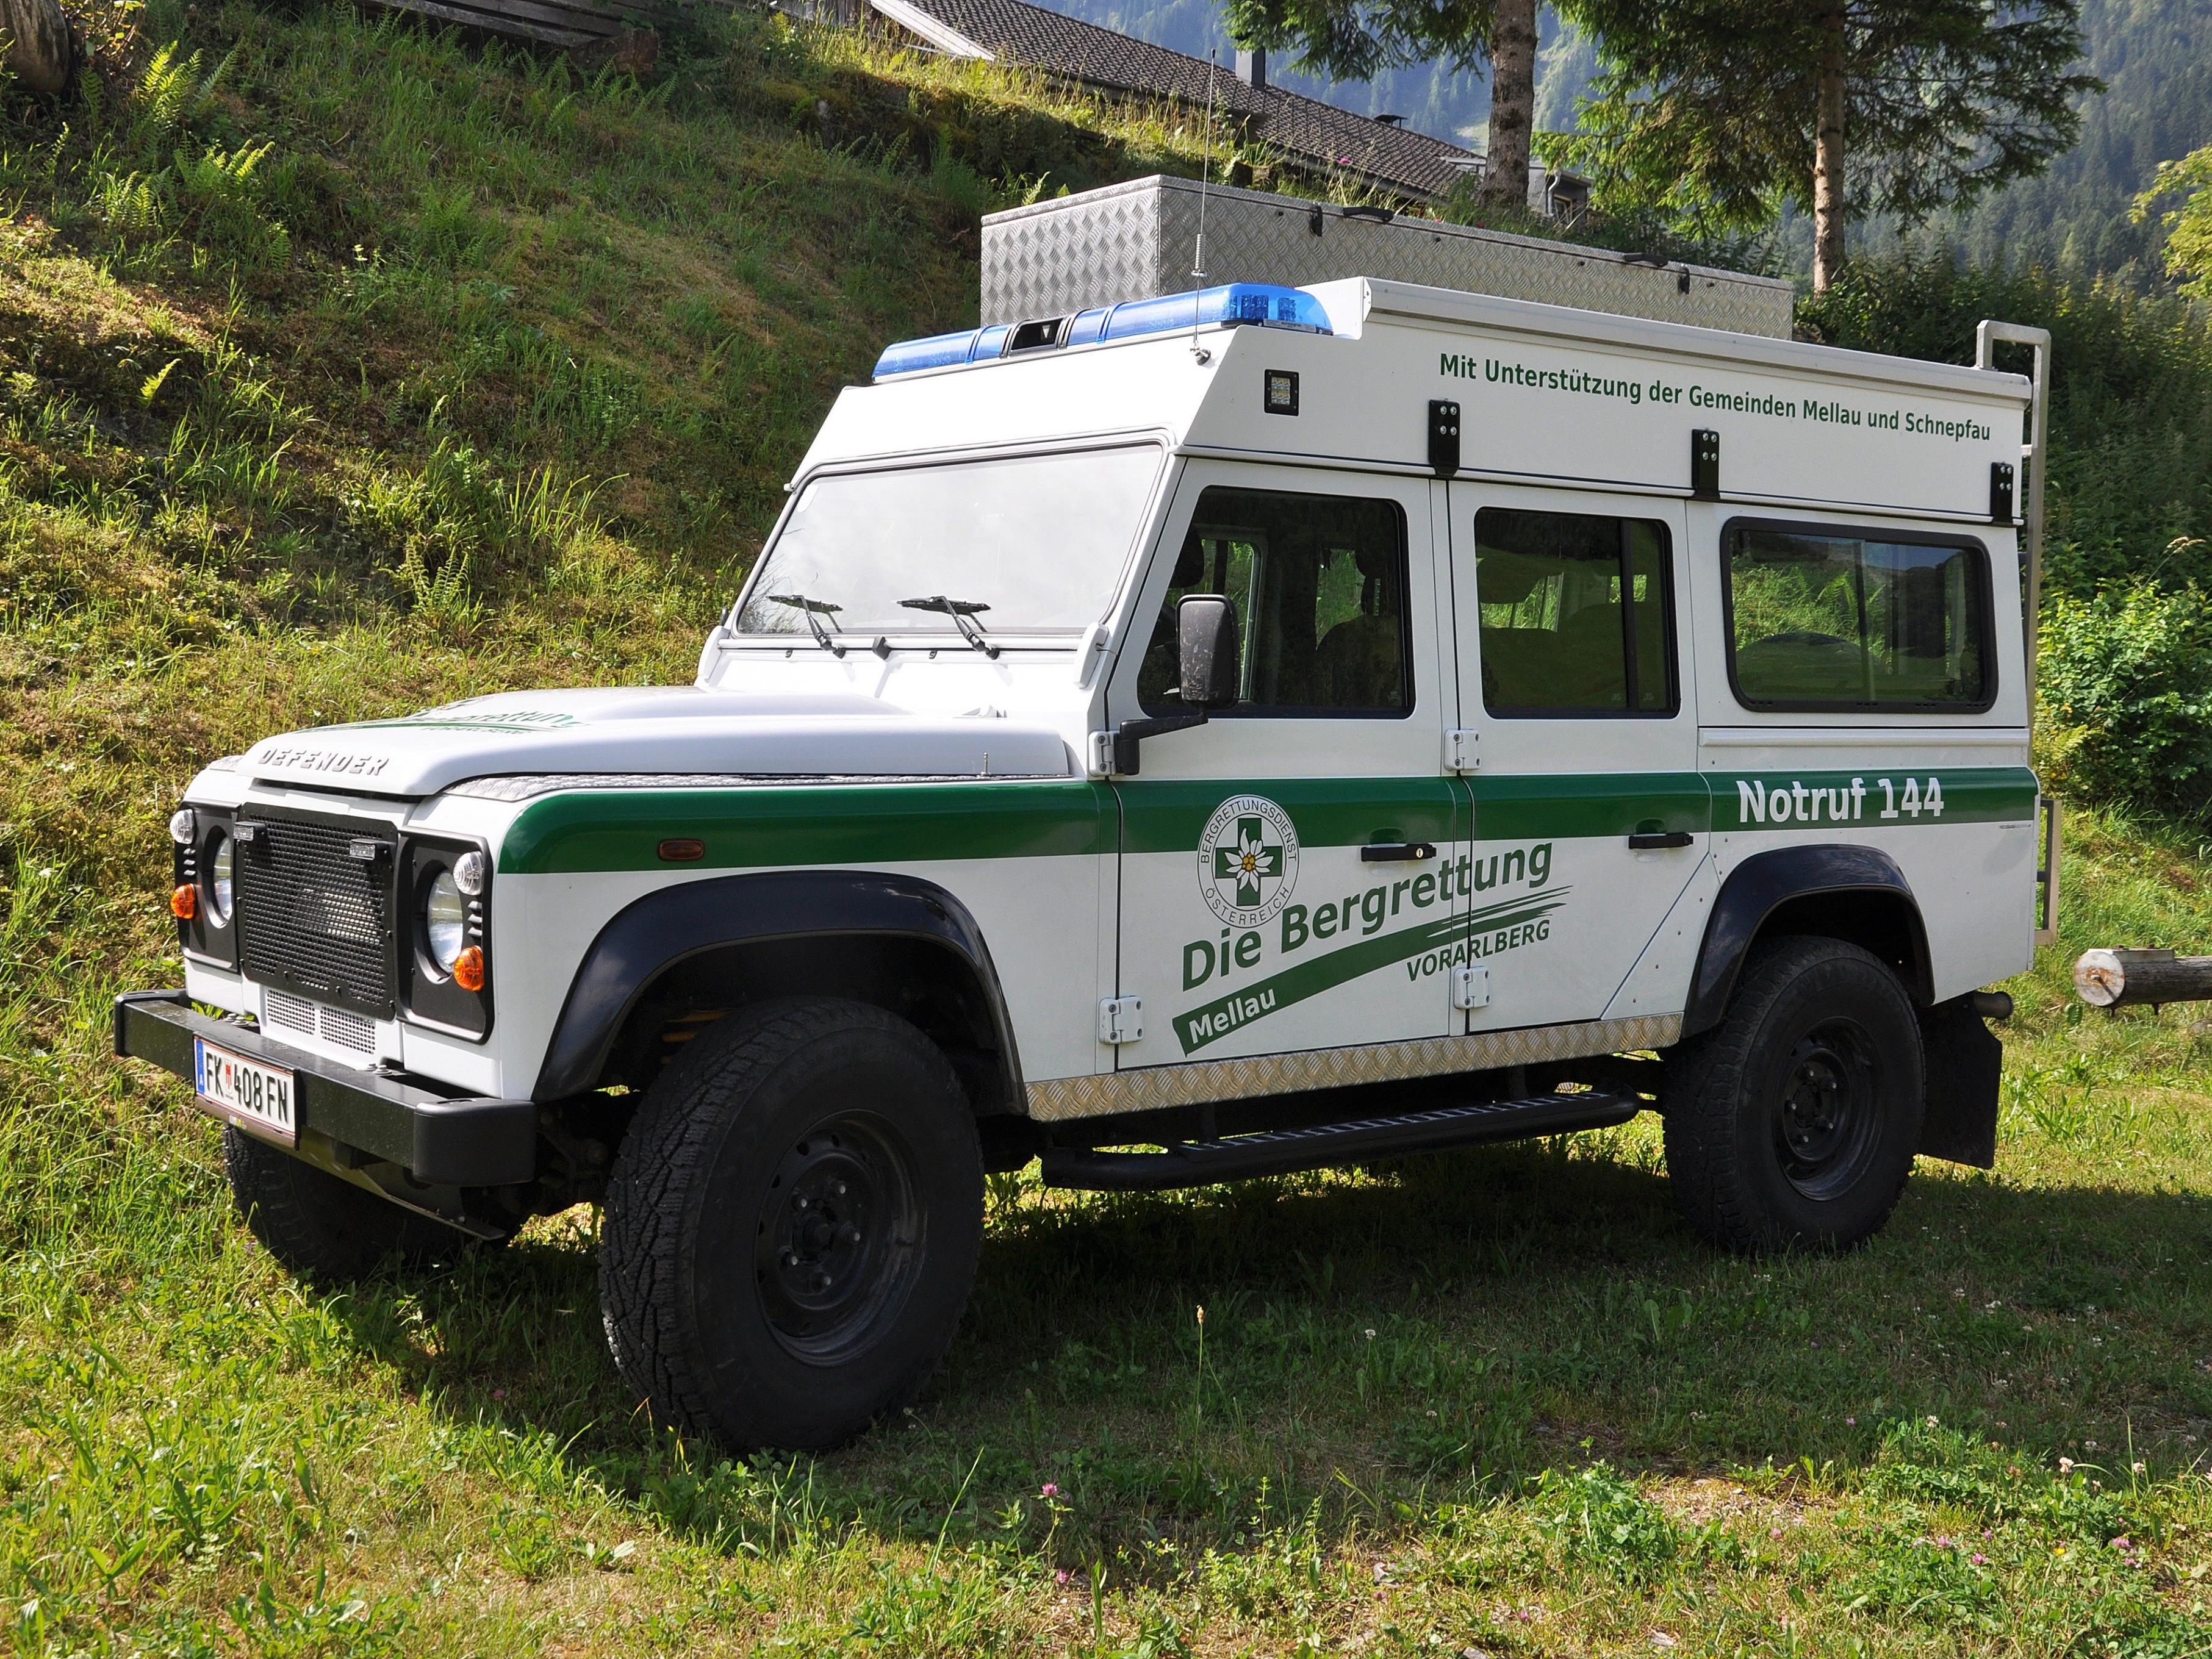 Das Einsatzfahrzeug der Bergrettung Mellau war in die Jahre gekommen und wurde durch einen neuen Land Rover Defender mit Spezialaufbau ersetzt.